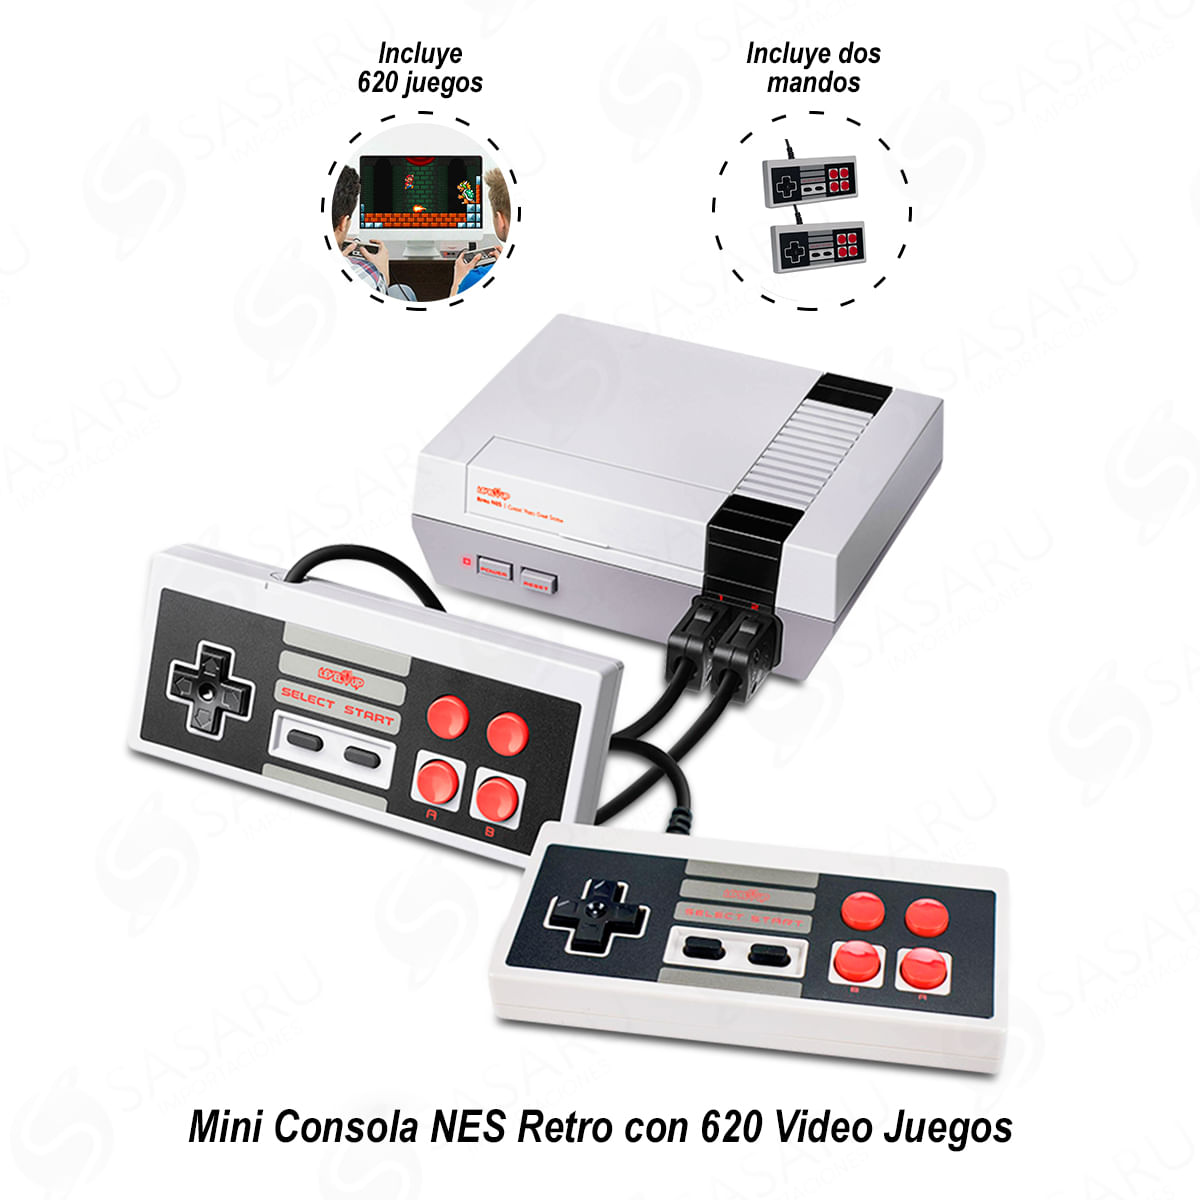 Mini Consola NES Retro con 620 Video Juegos